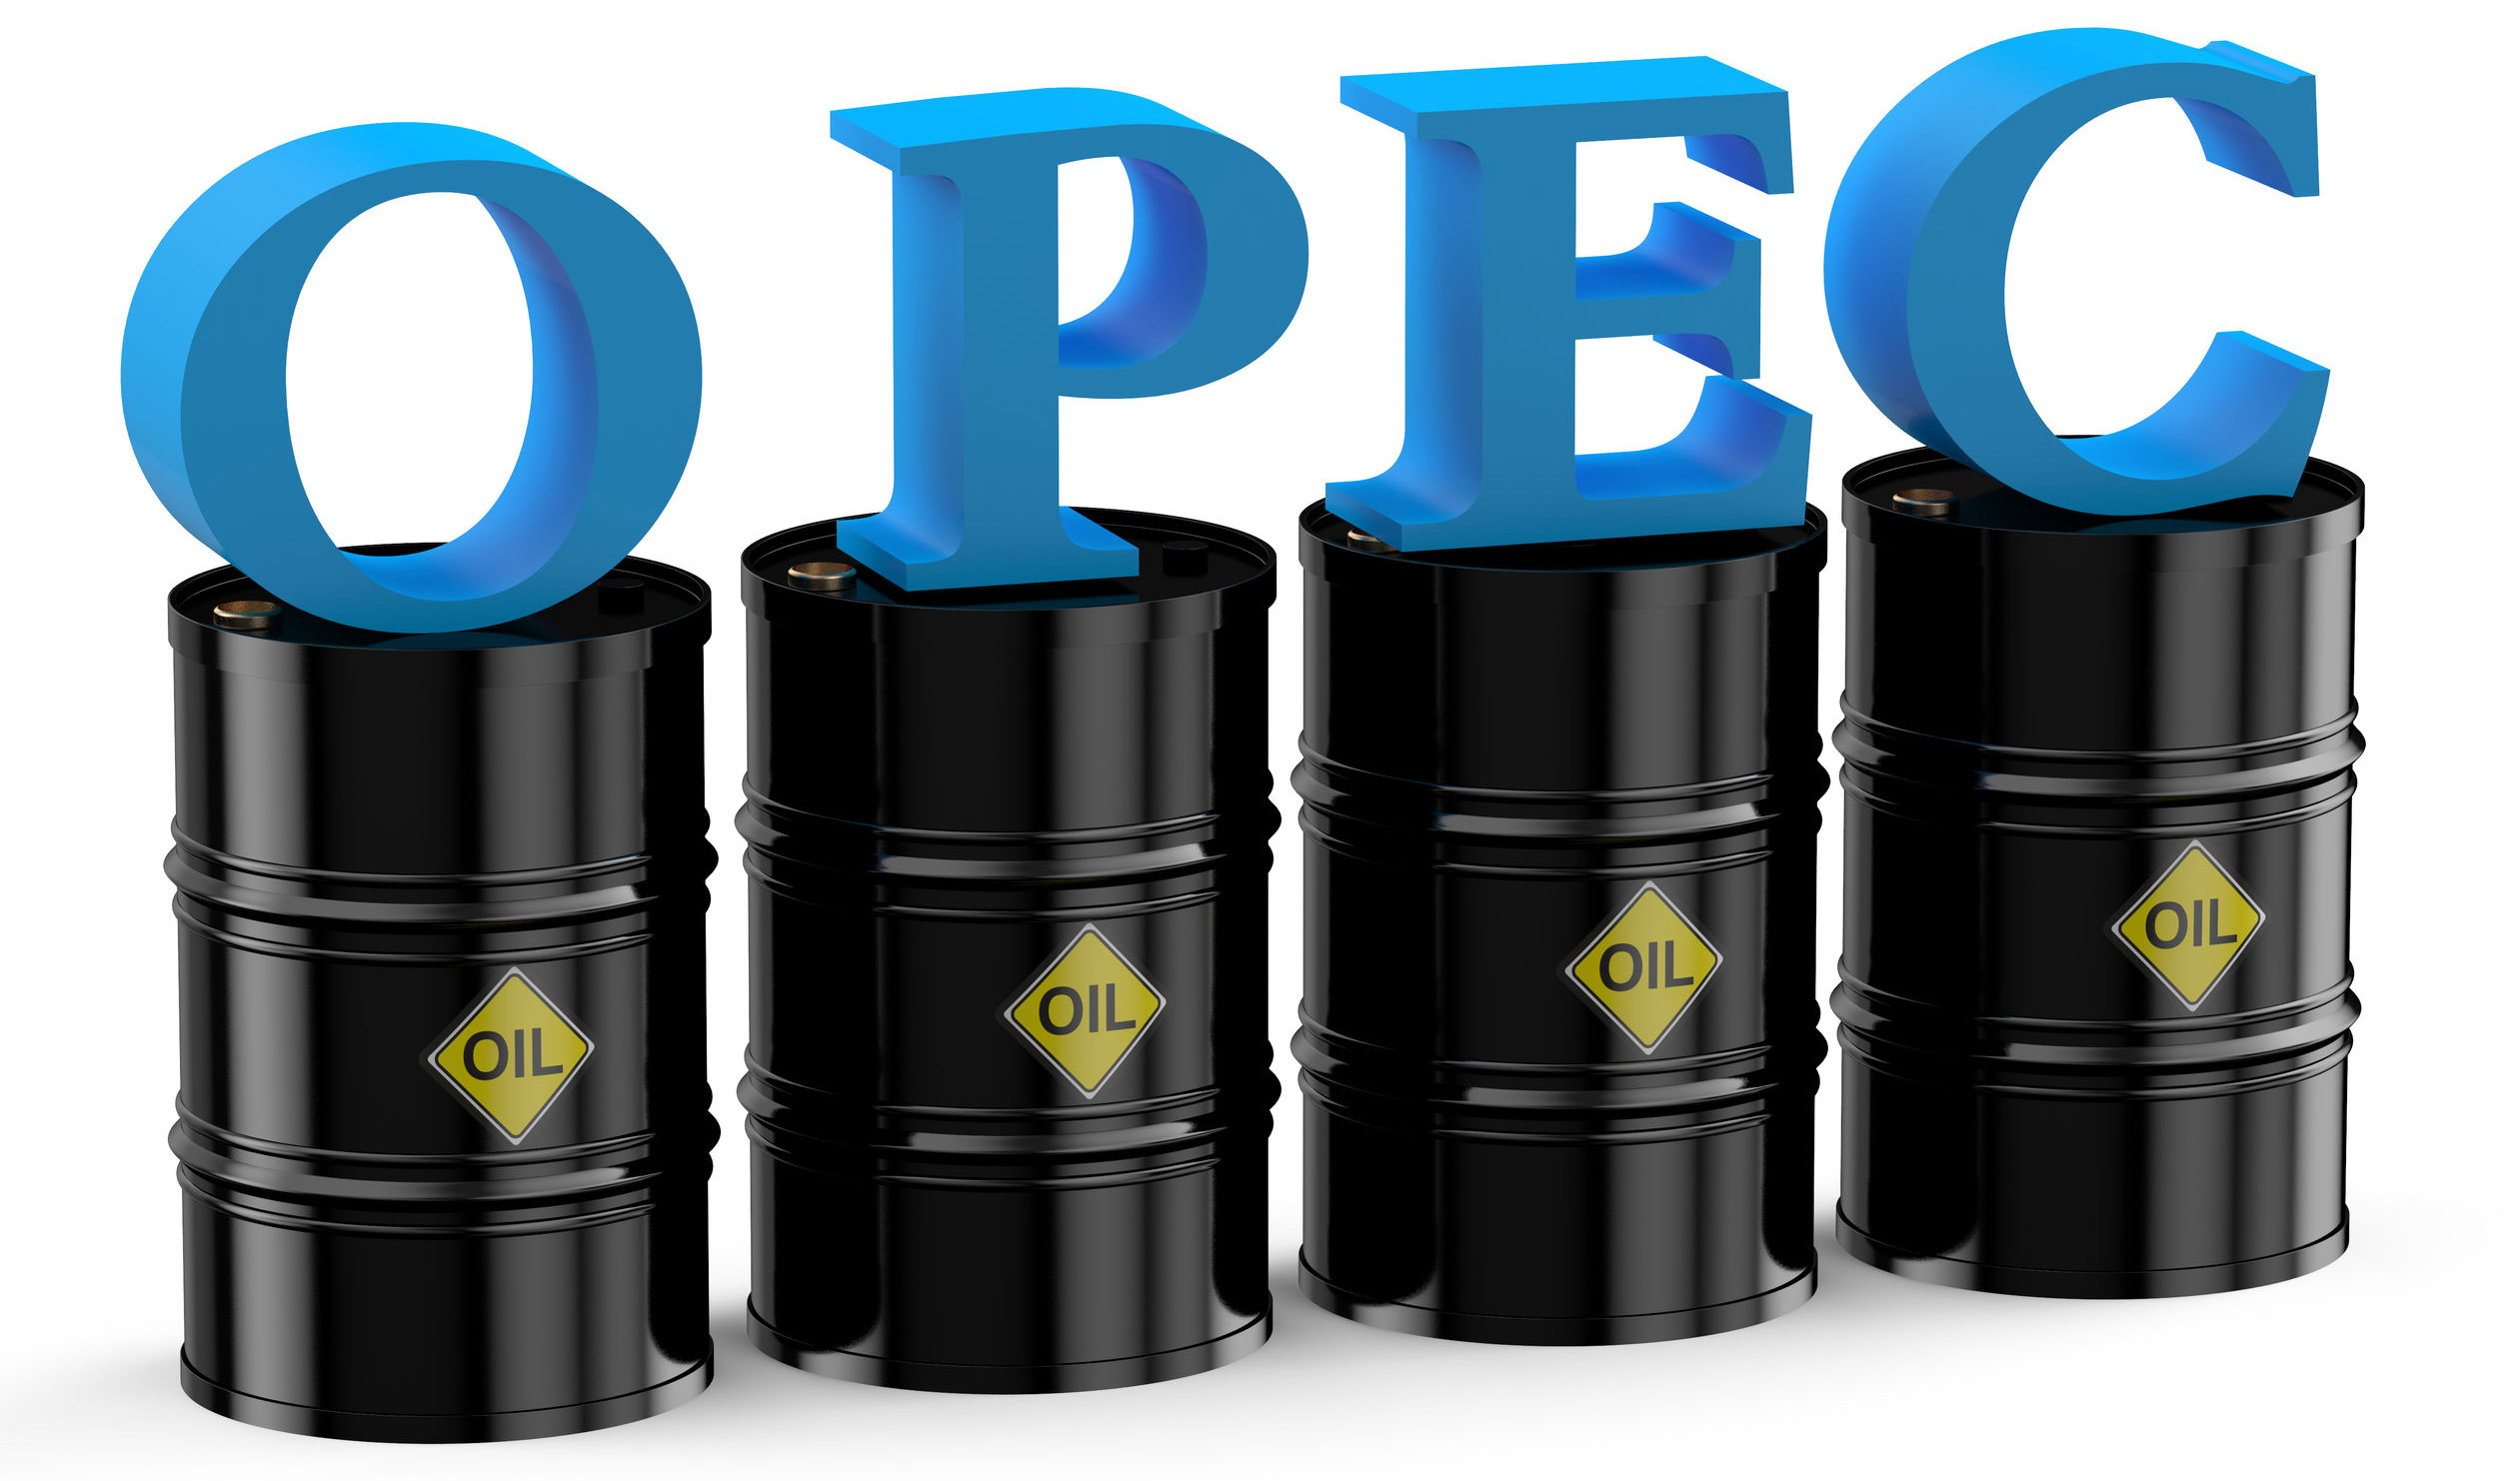 قیمت سبد نفتی اوپک در کانال ۵۵ دلار قرار گرفت